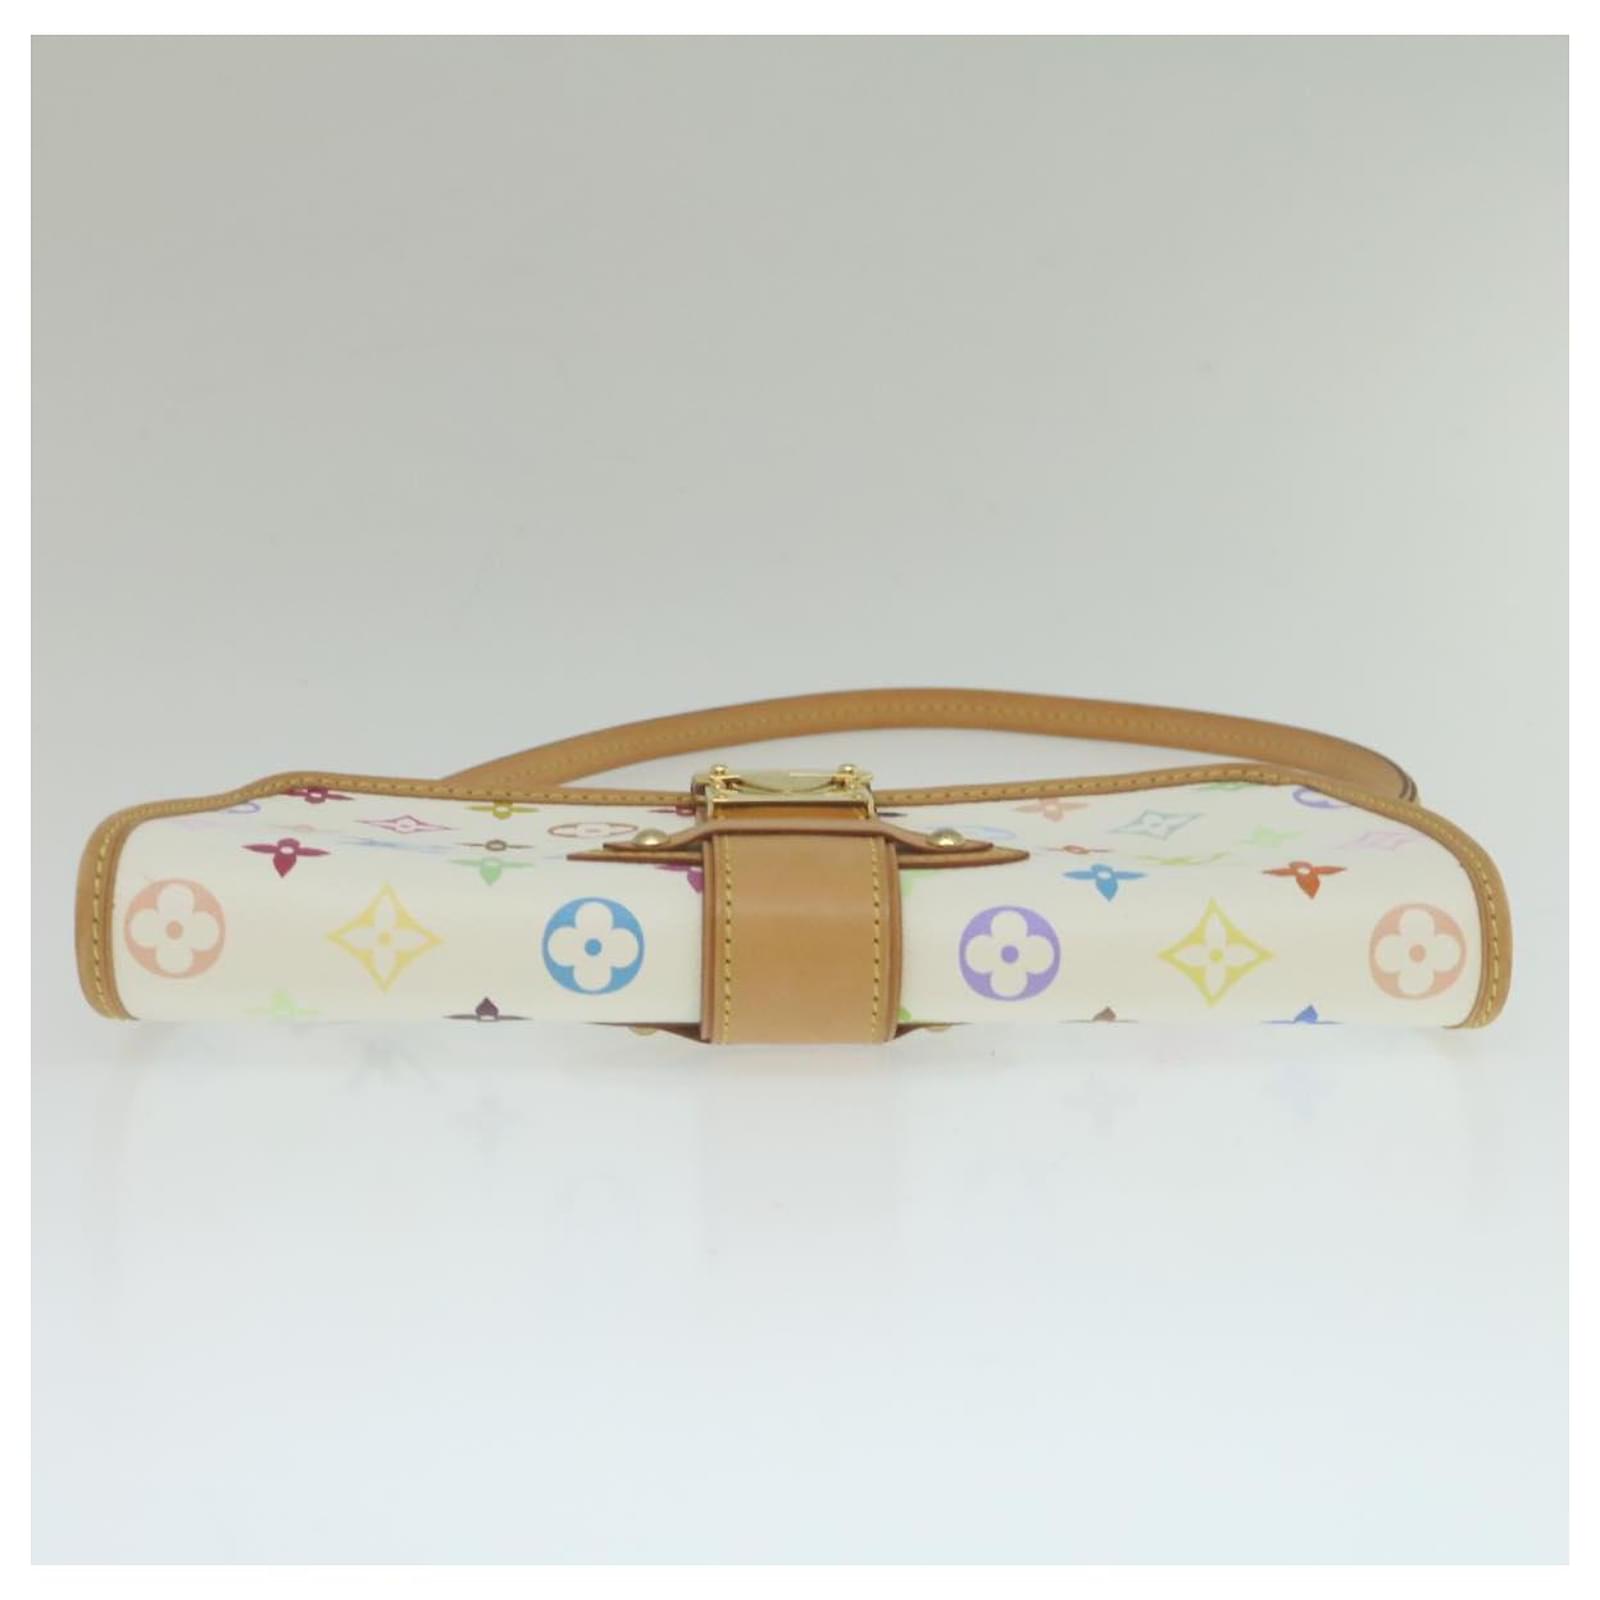 Auth Louis Vuitton M40049 Monogram Multicolor Shirley Shoulder Bag